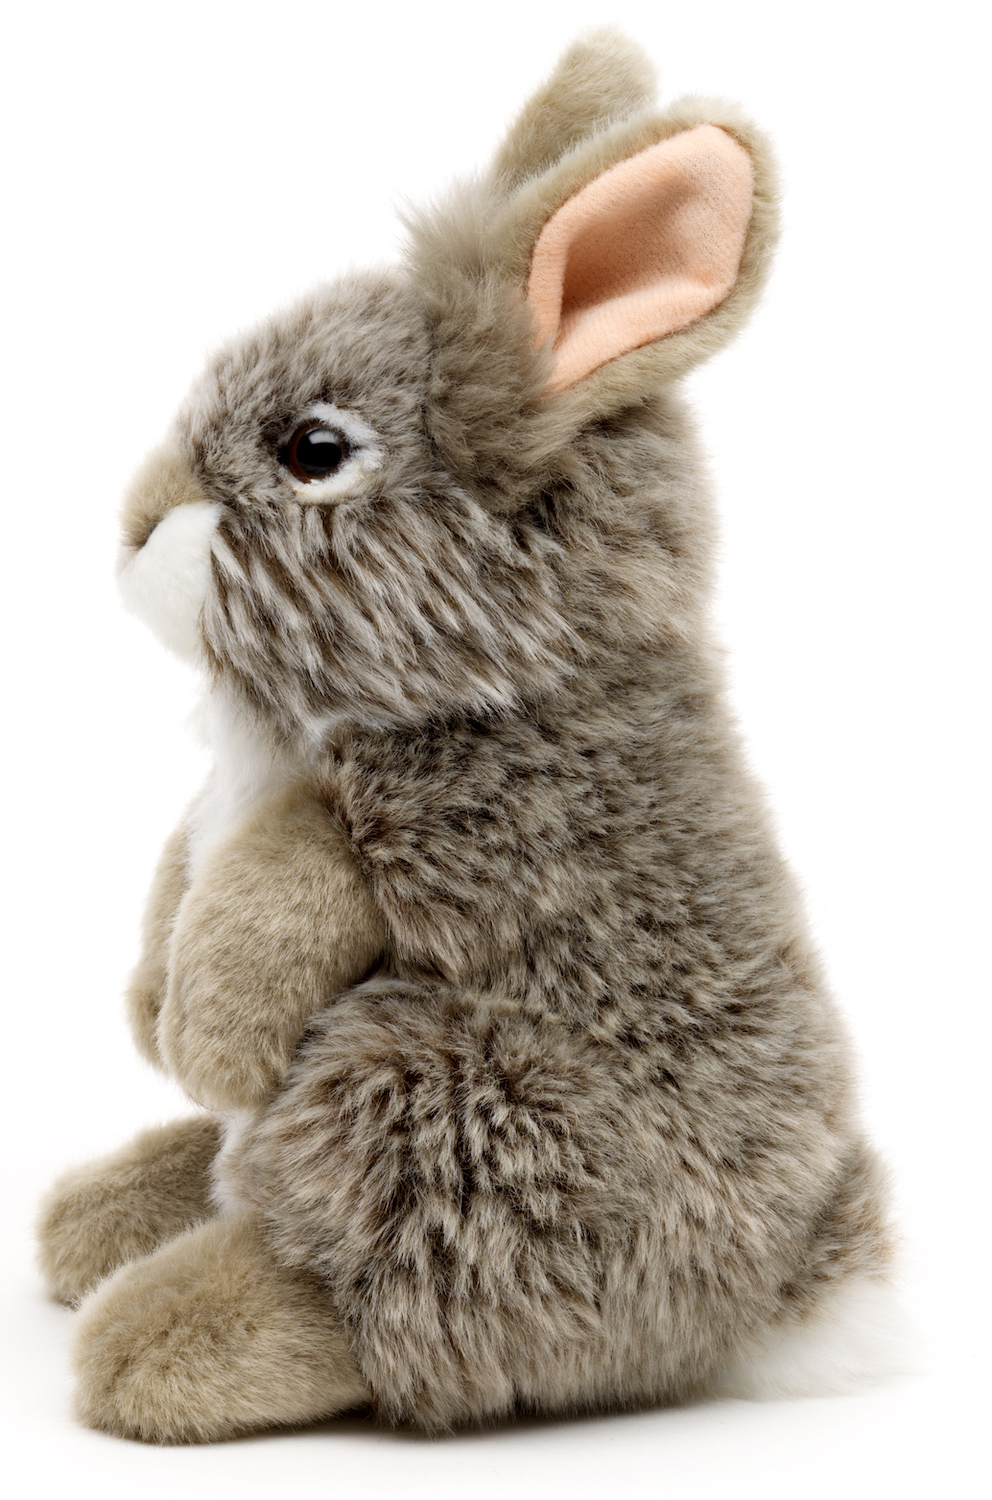 Gray Angora rabbit, standing